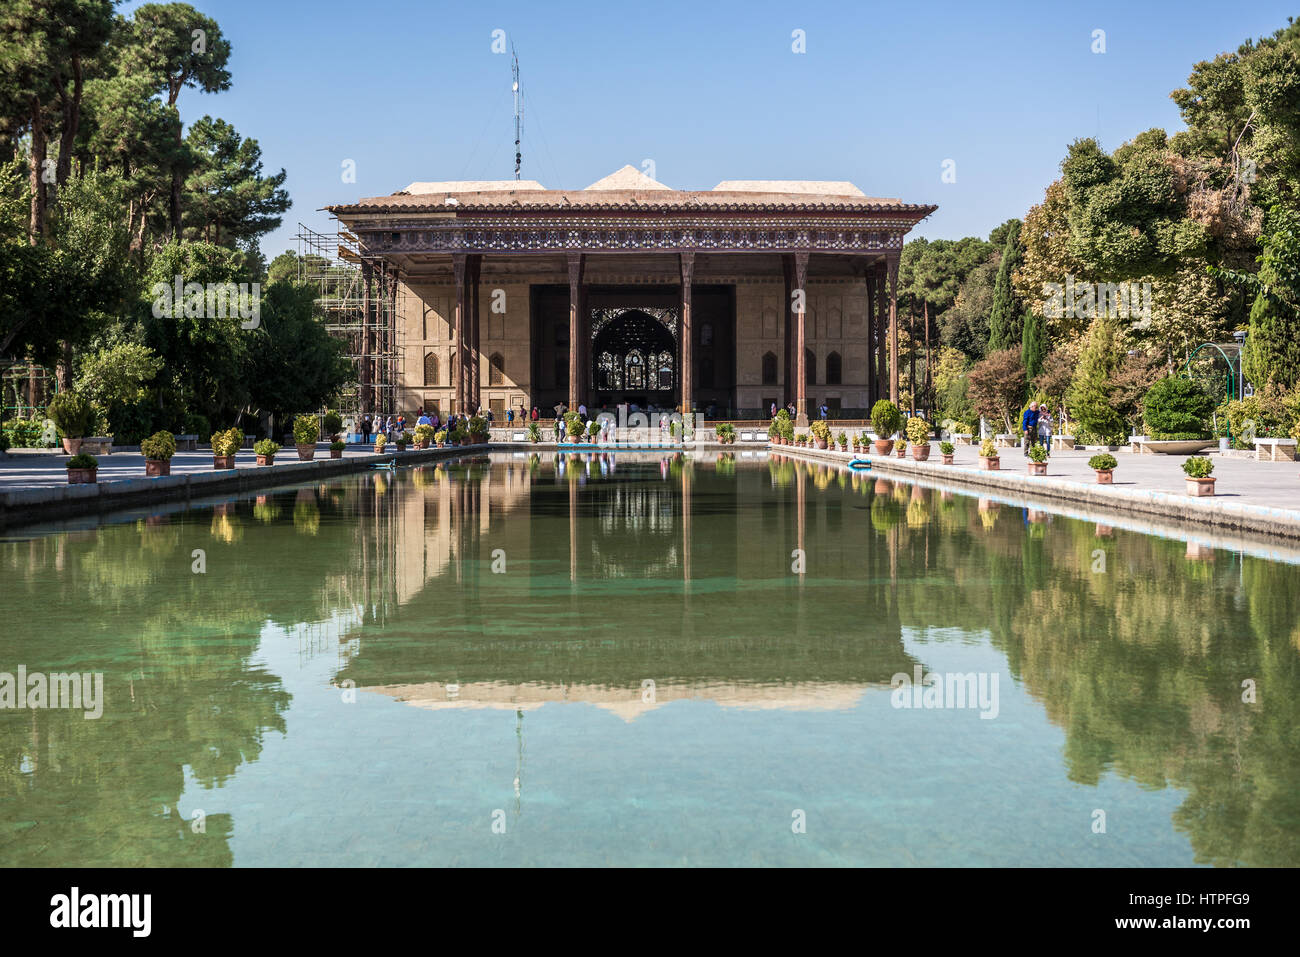 Il Palazzo di quaranta colonne (Chehel Sotoun) e acqua in piscina a Isfahan, capitale della provincia di Isfahan in Iran Foto Stock